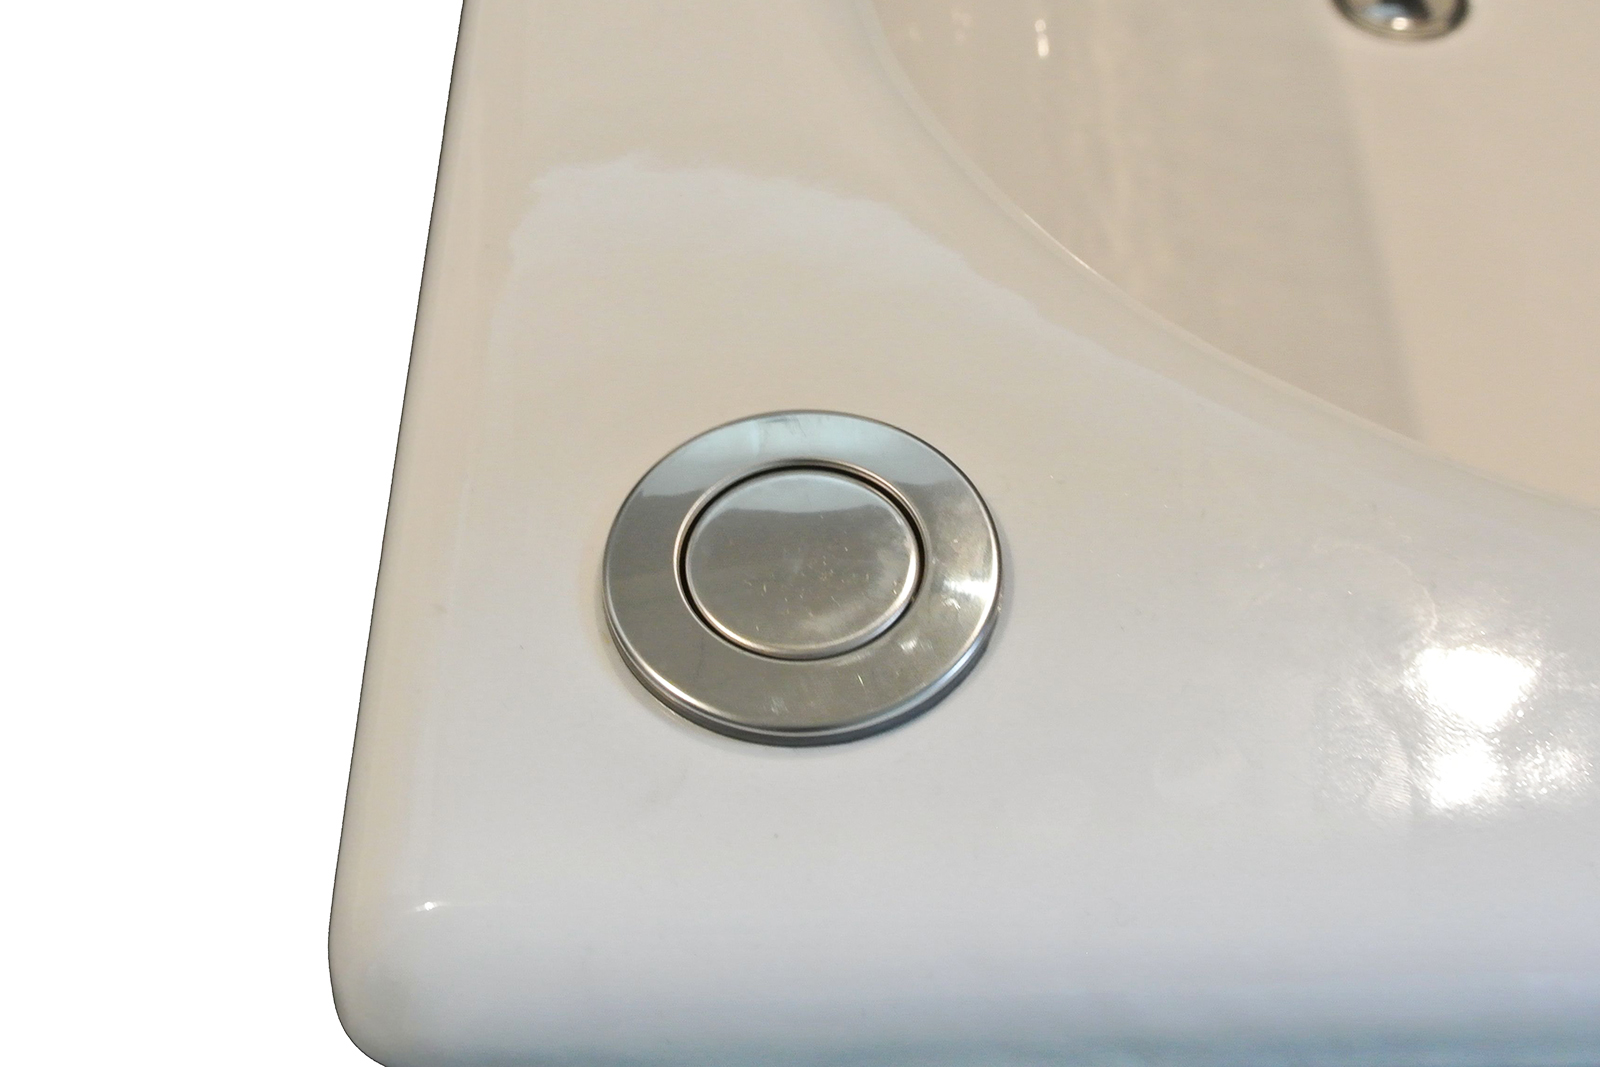 鋳物ホーロー浴槽 1172 埋込タイプ KB-BT004-01-G122 ワンプッシュ排水栓。浴槽の設置位置によって「左向き」か「右向き」かをご選択ください